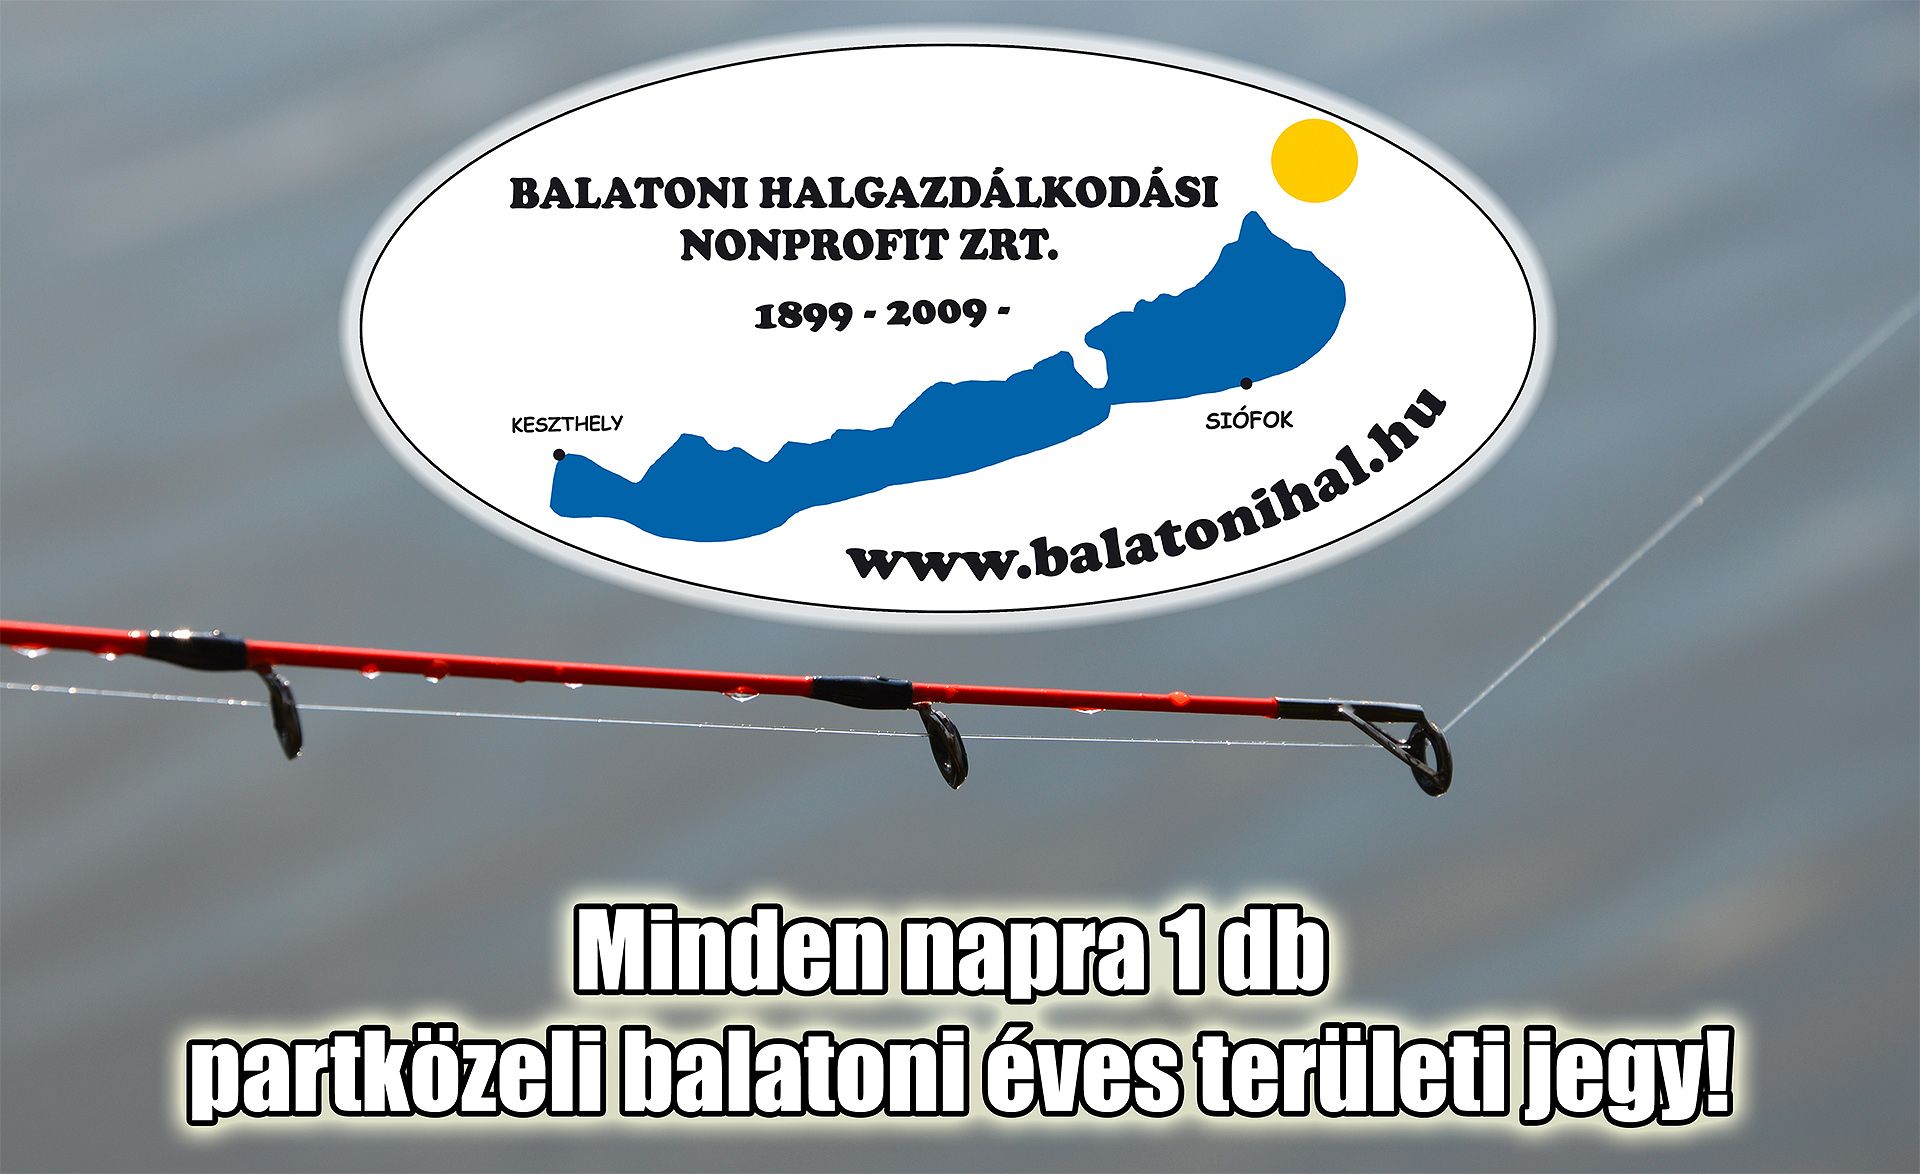 A Balatoni Nonprofit Halgazdálkodási Zrt. jóvoltából minden nap gazdára talál 1 db partközeli balatoni éves területi jegy